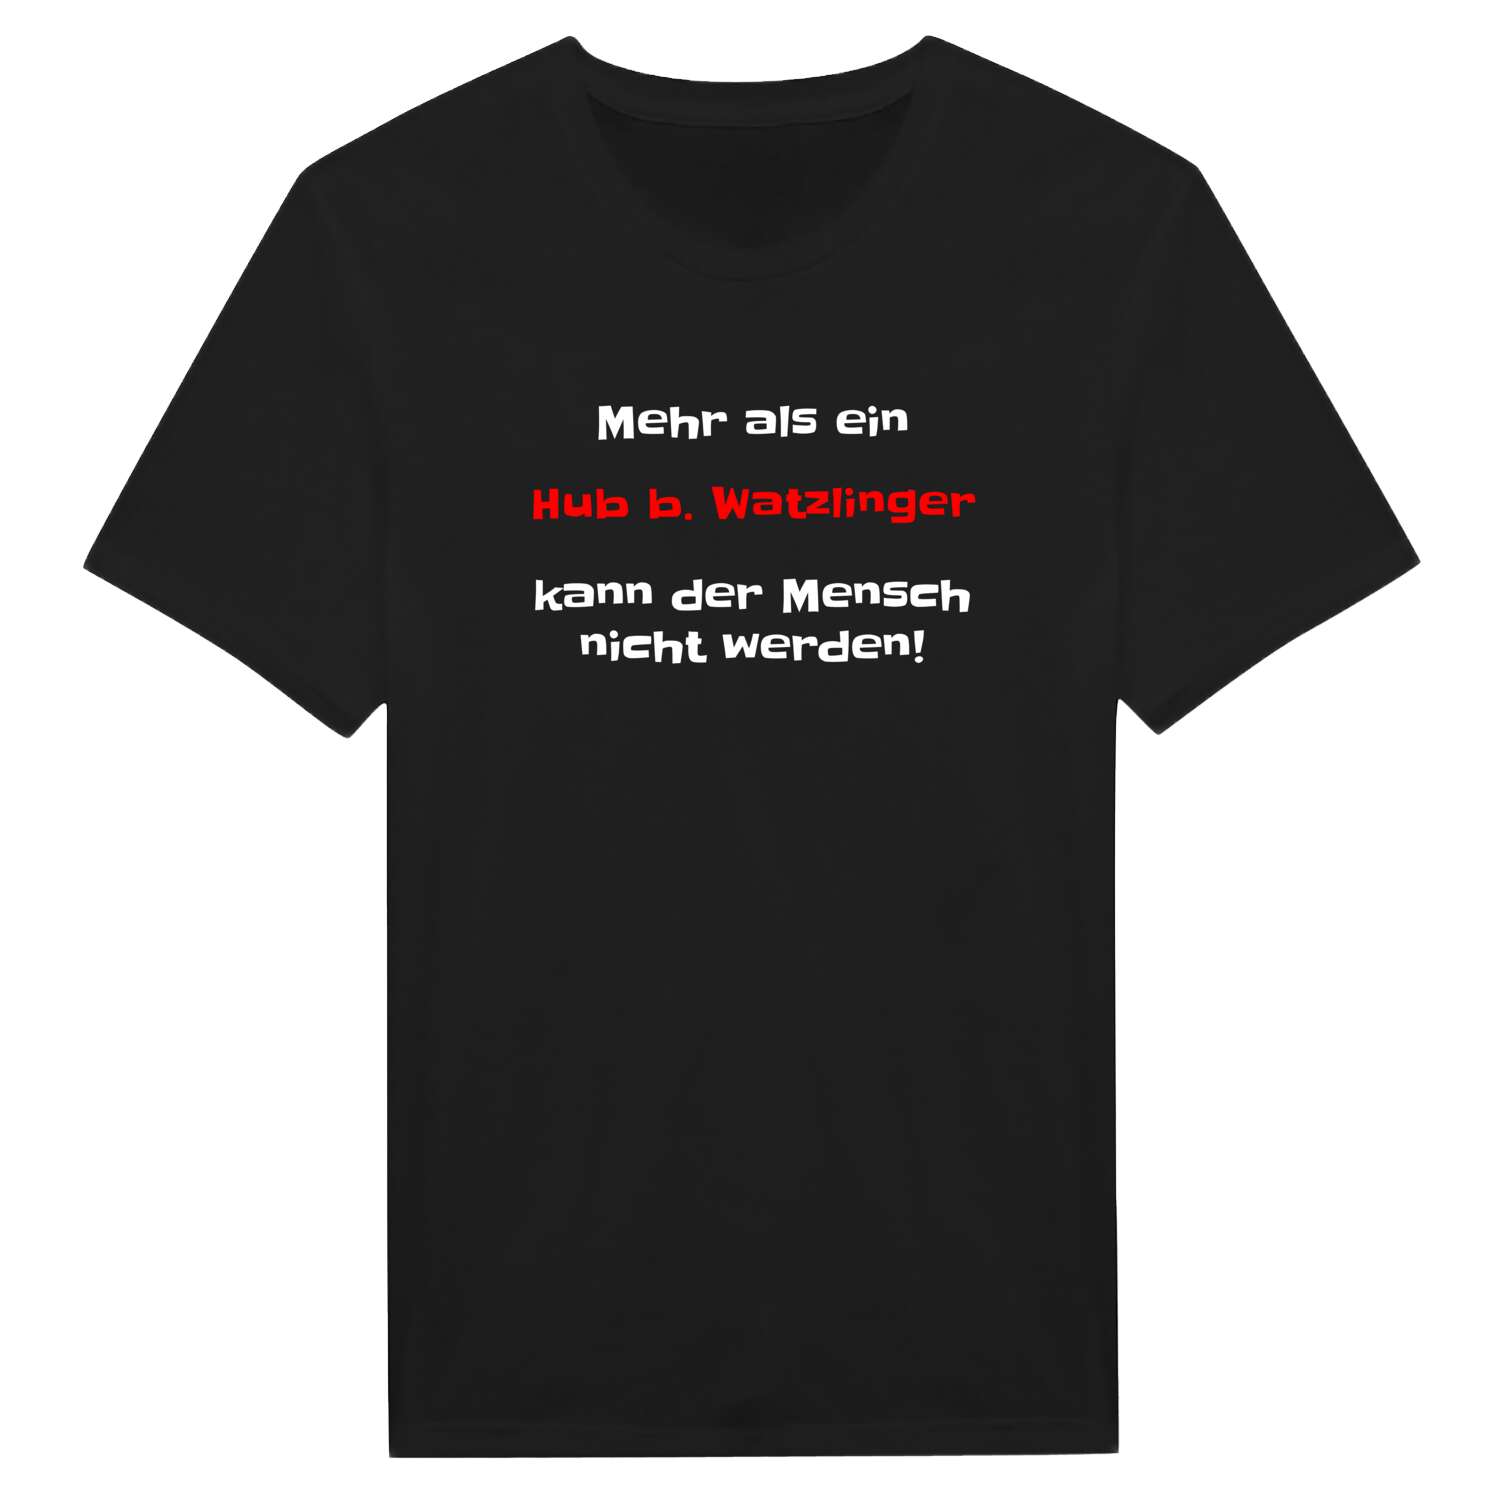 Hub b. Watzling T-Shirt »Mehr als ein«